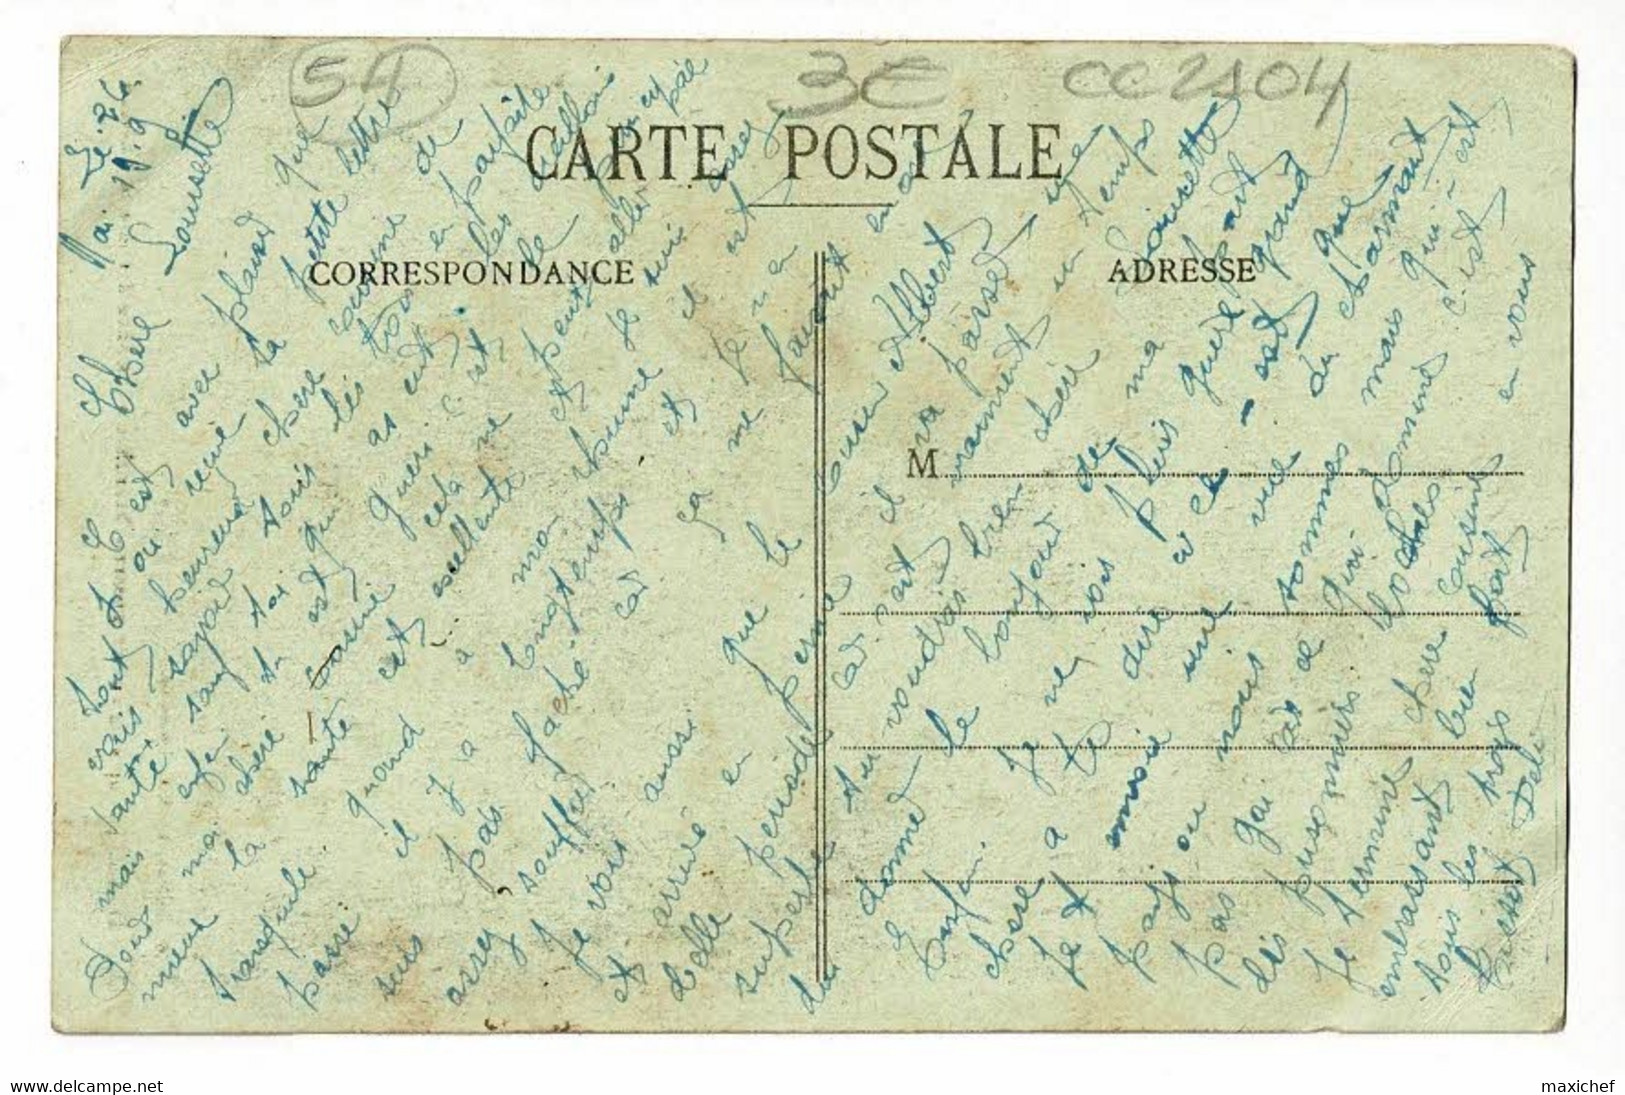 Domèvre Après Quatre Ans De Guerre - Tranchée Allemande Derrière Le Château - Circ 1919, Sous Enveloppe - Domevre En Haye